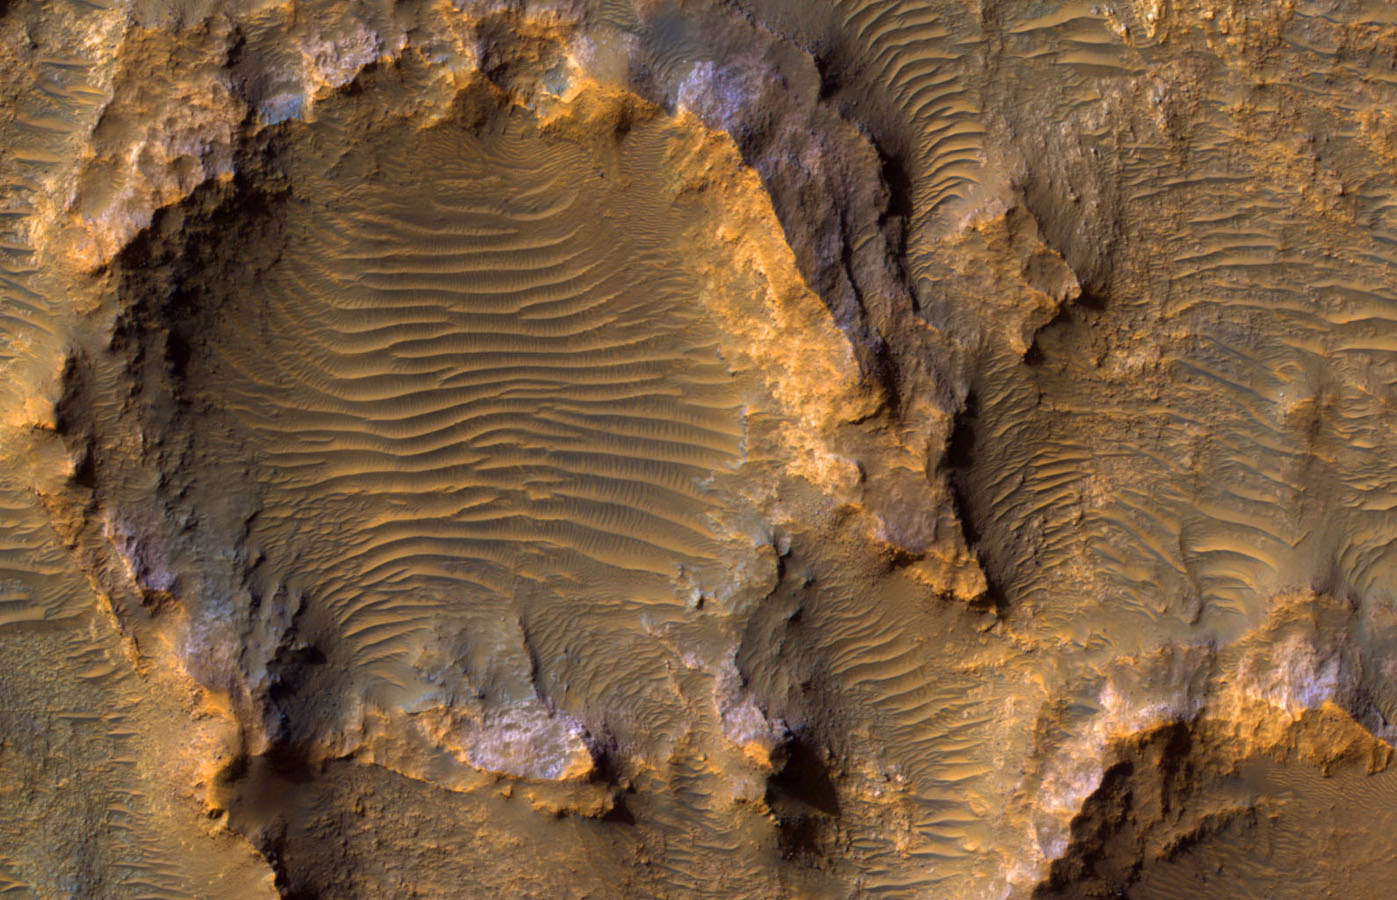 Bedrock on a Crater Floor